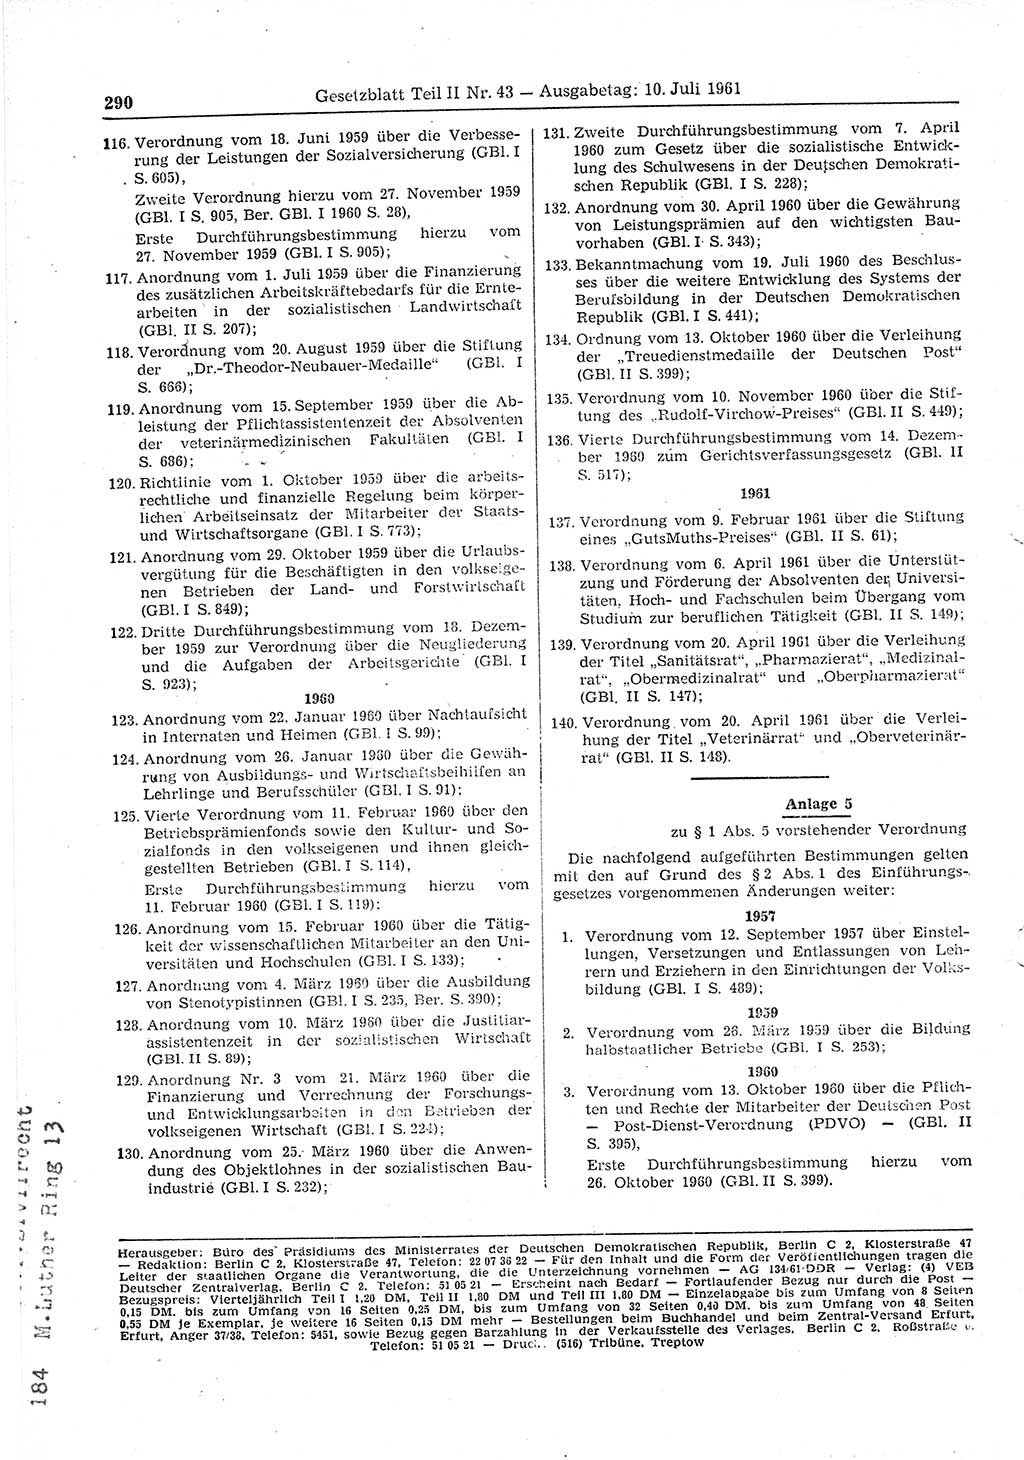 Gesetzblatt (GBl.) der Deutschen Demokratischen Republik (DDR) Teil ⅠⅠ 1961, Seite 290 (GBl. DDR ⅠⅠ 1961, S. 290)